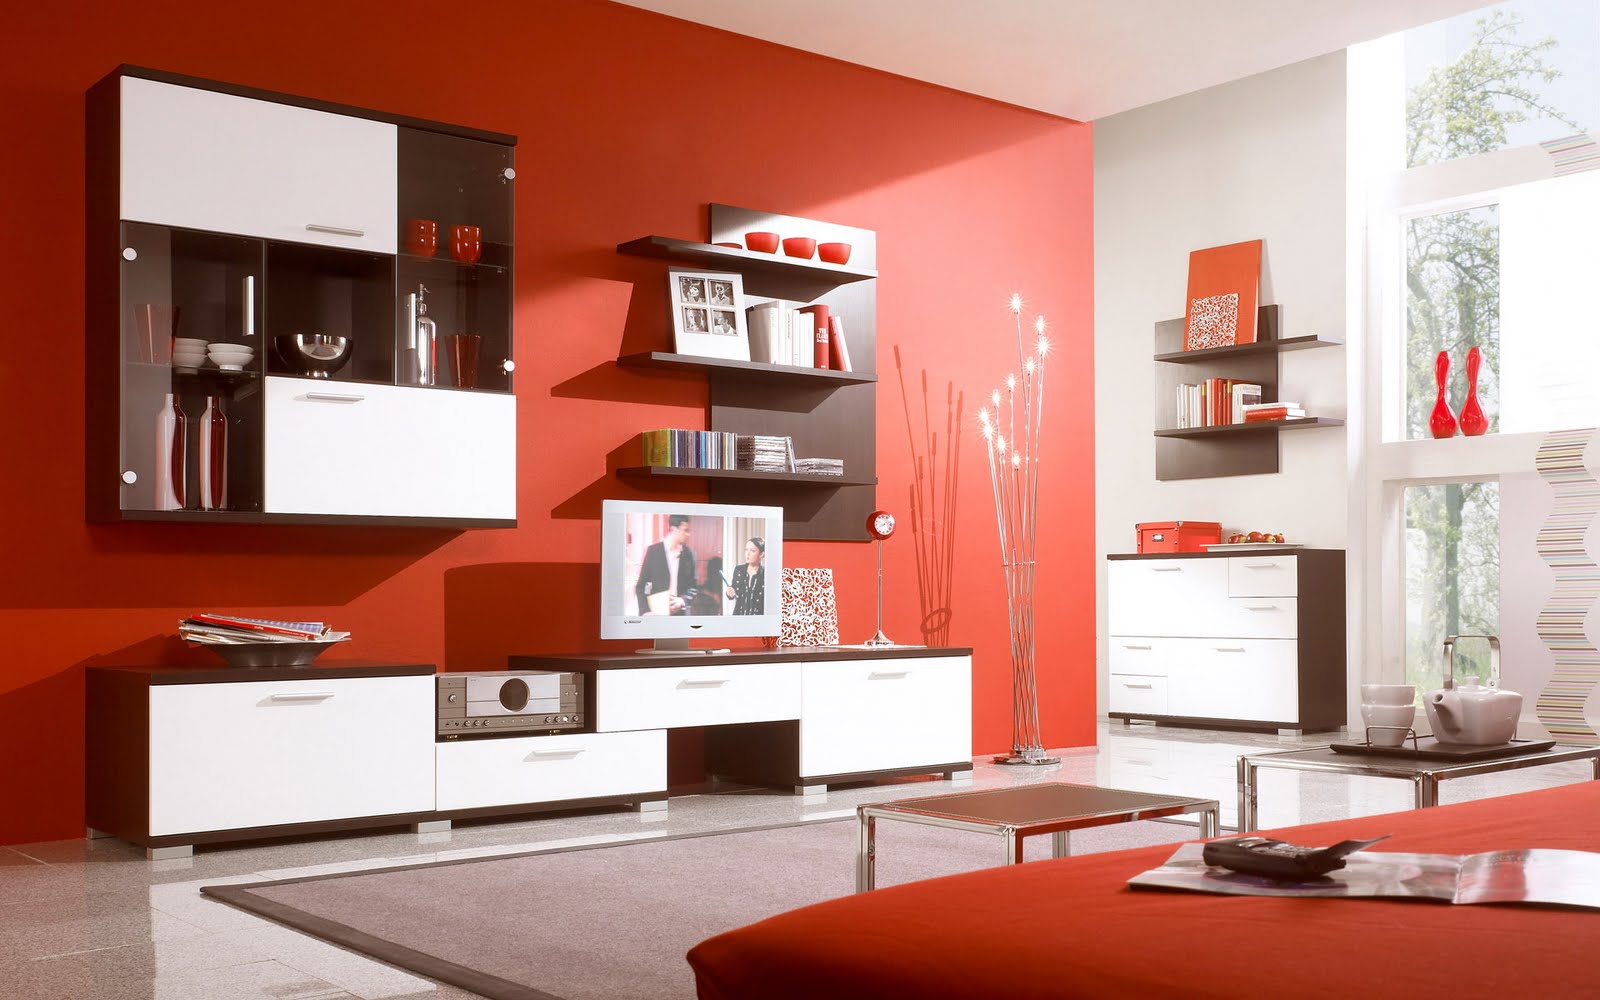 http://4.bp.blogspot.com/-GdIJIg4fTpI/T7-qiX6hf8I/AAAAAAAAAkI/9E1-cuhYJYQ/s1600/Red-Plum-Modern-Living-Room.jpg